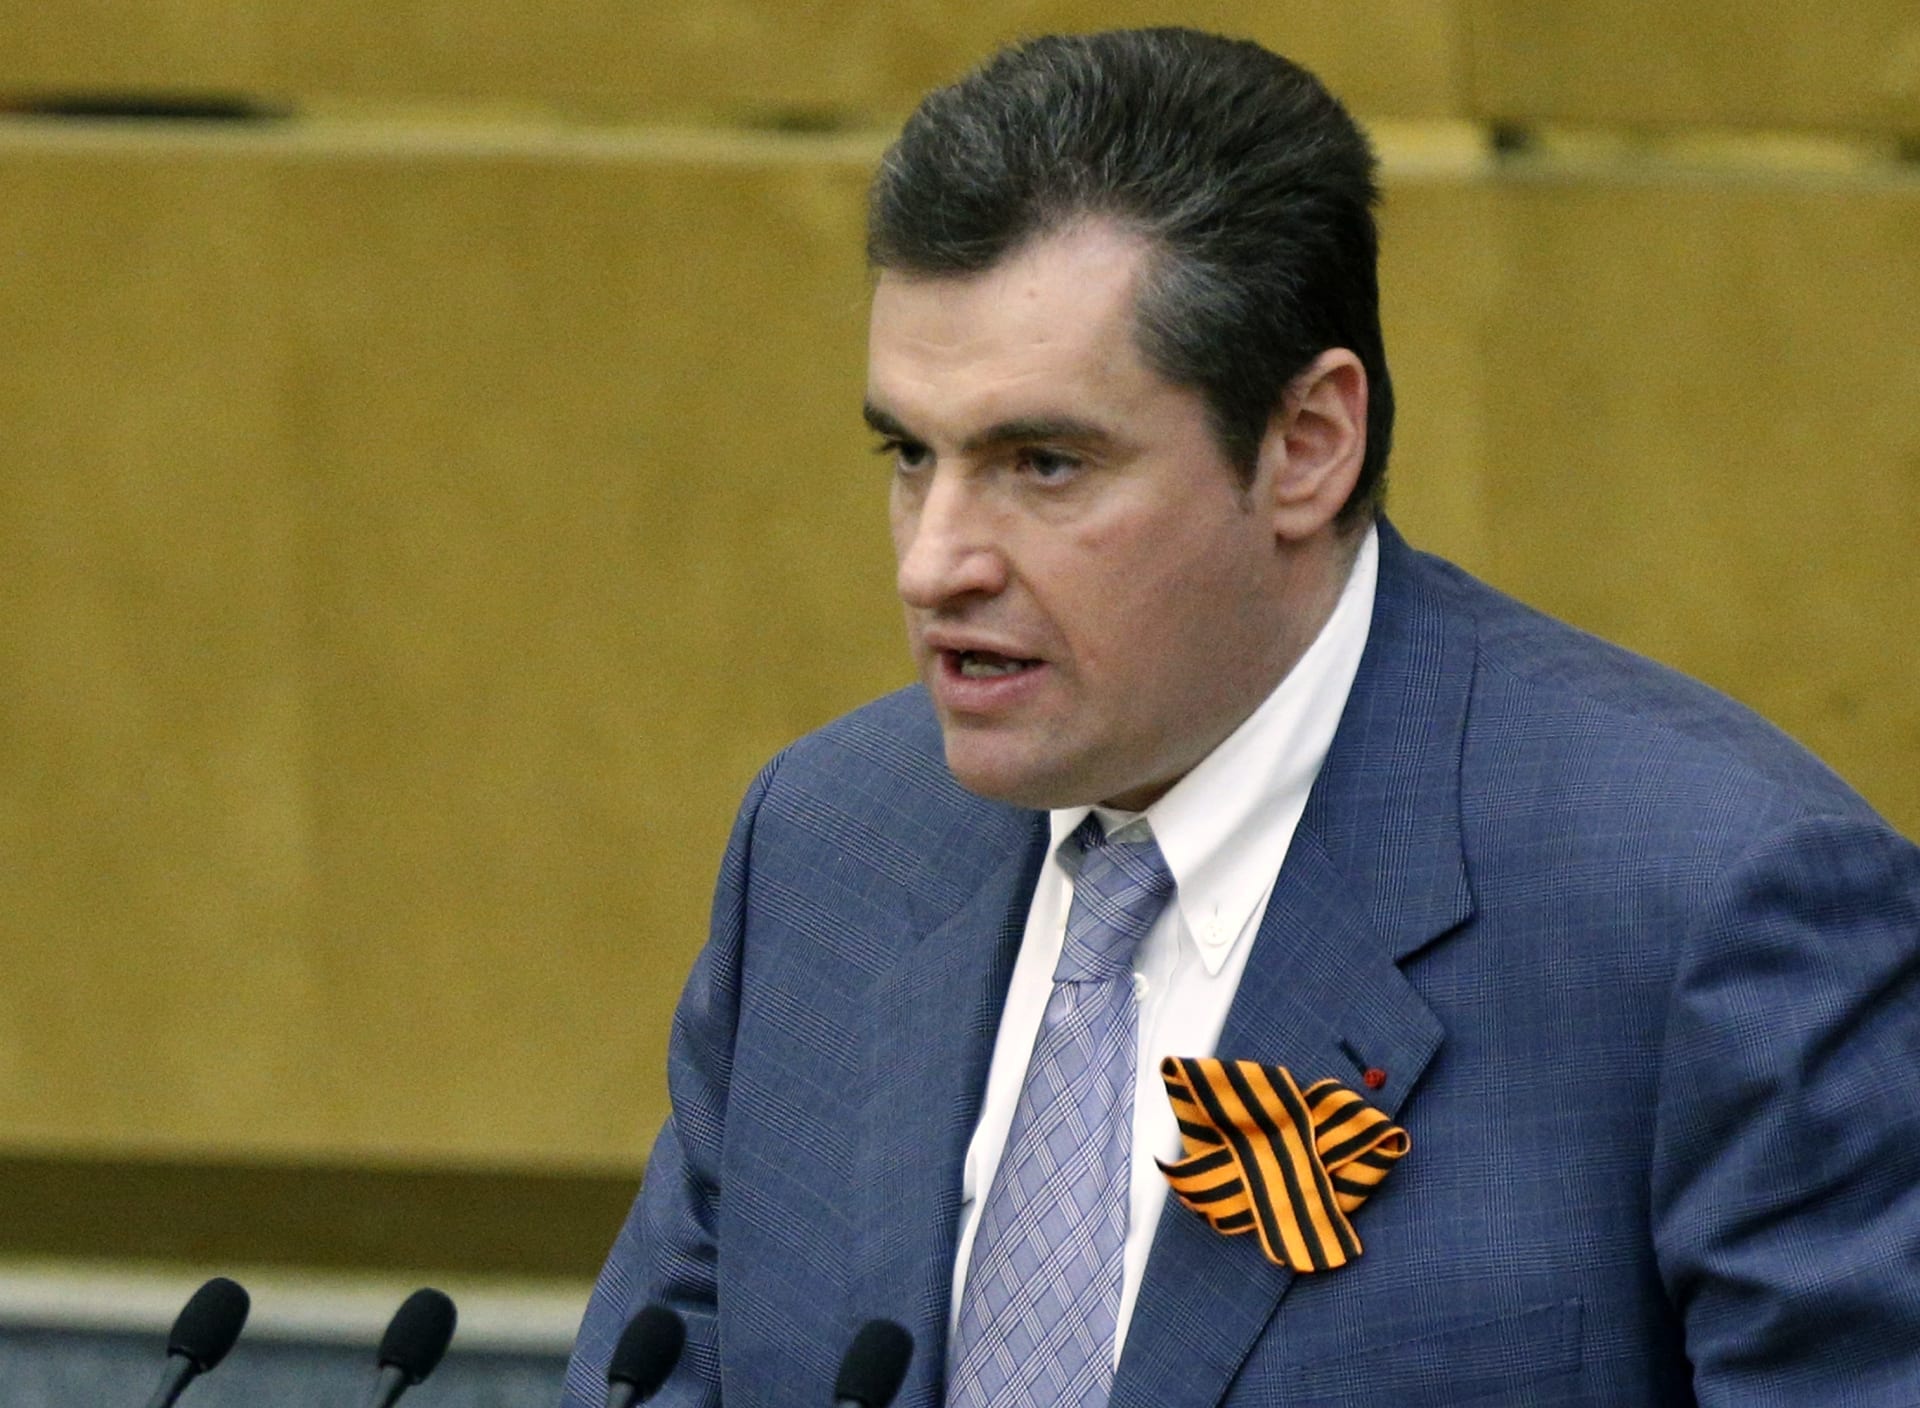 Šéf zahraničního výboru dolní komory ruského parlamentu Leonid Sluckij.